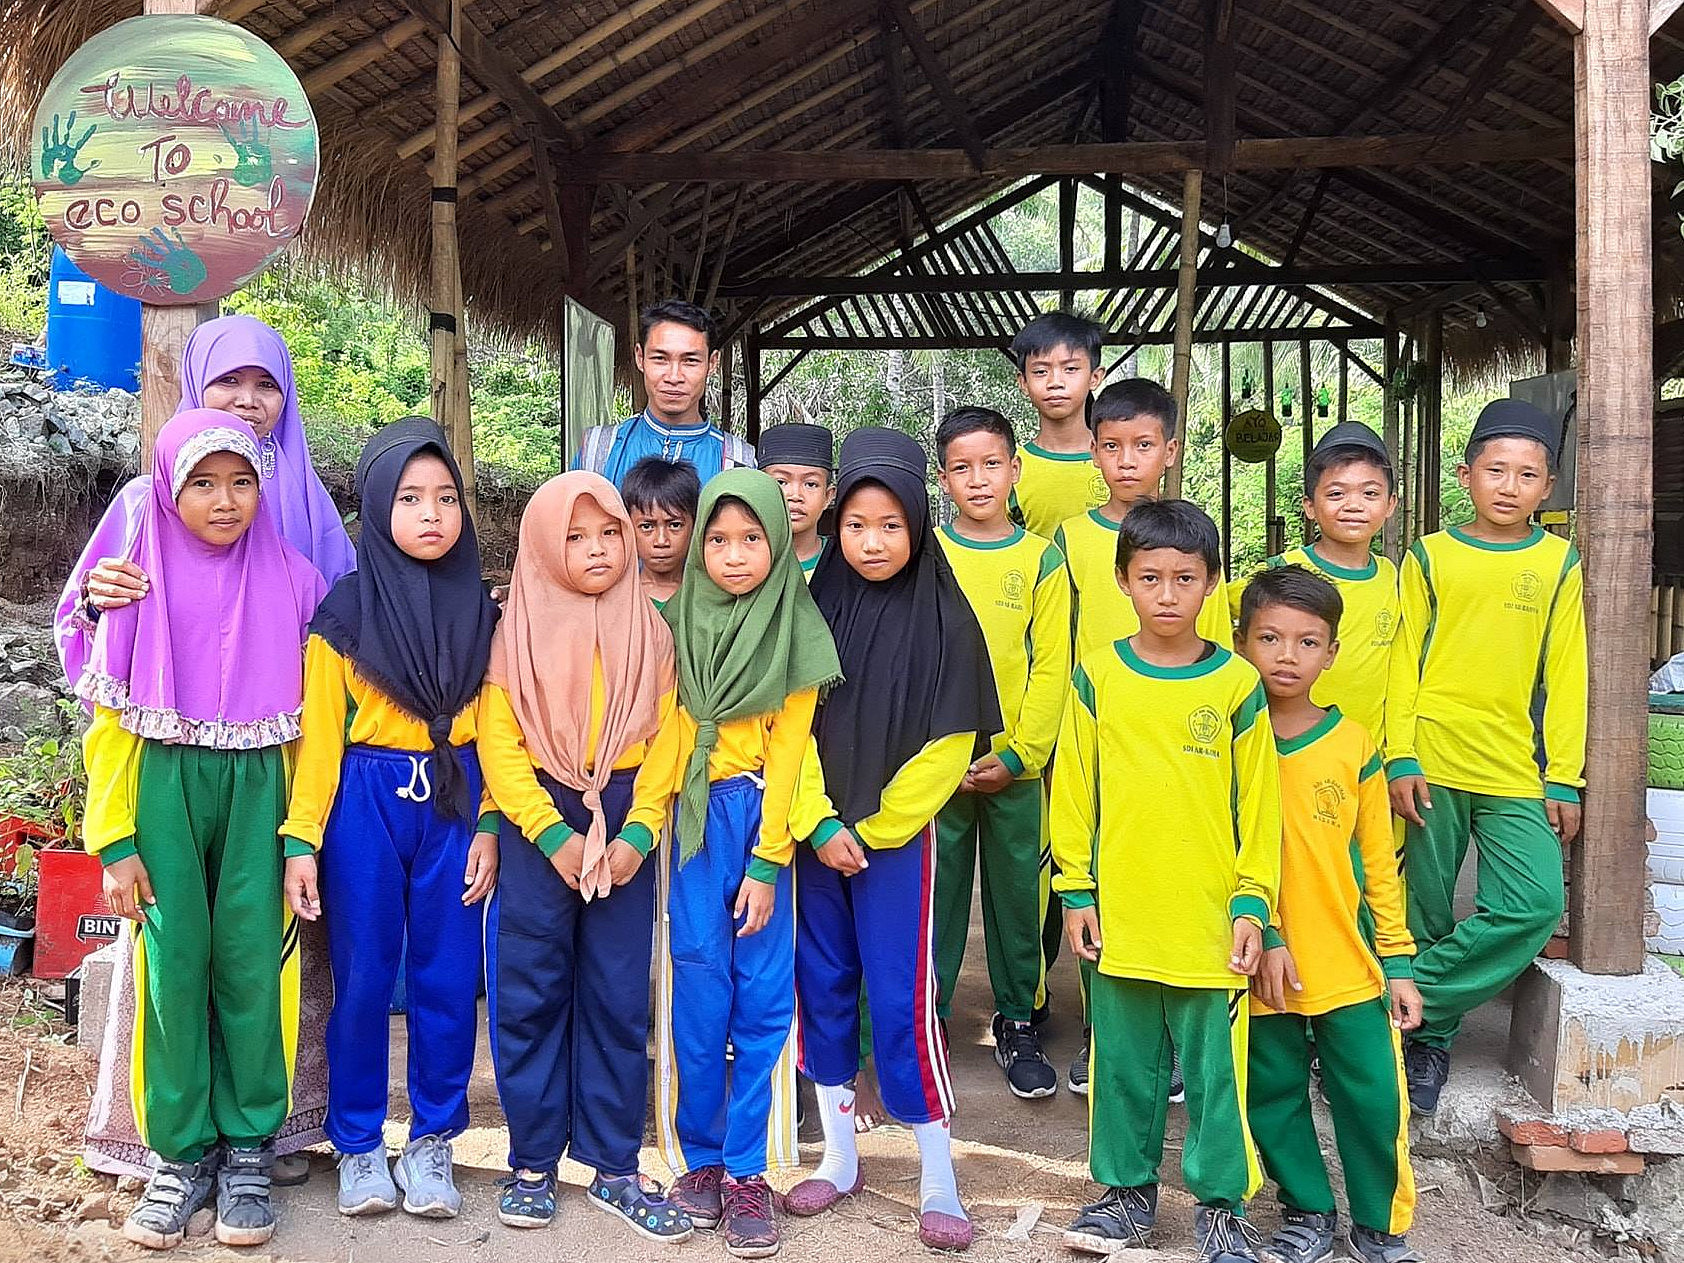 Durch die Spendenaktion der Universität Graz konnten der Bau der "Eco School" auf der Insel Lombok finanziert werden. Foto: Uni Graz/Ermann 